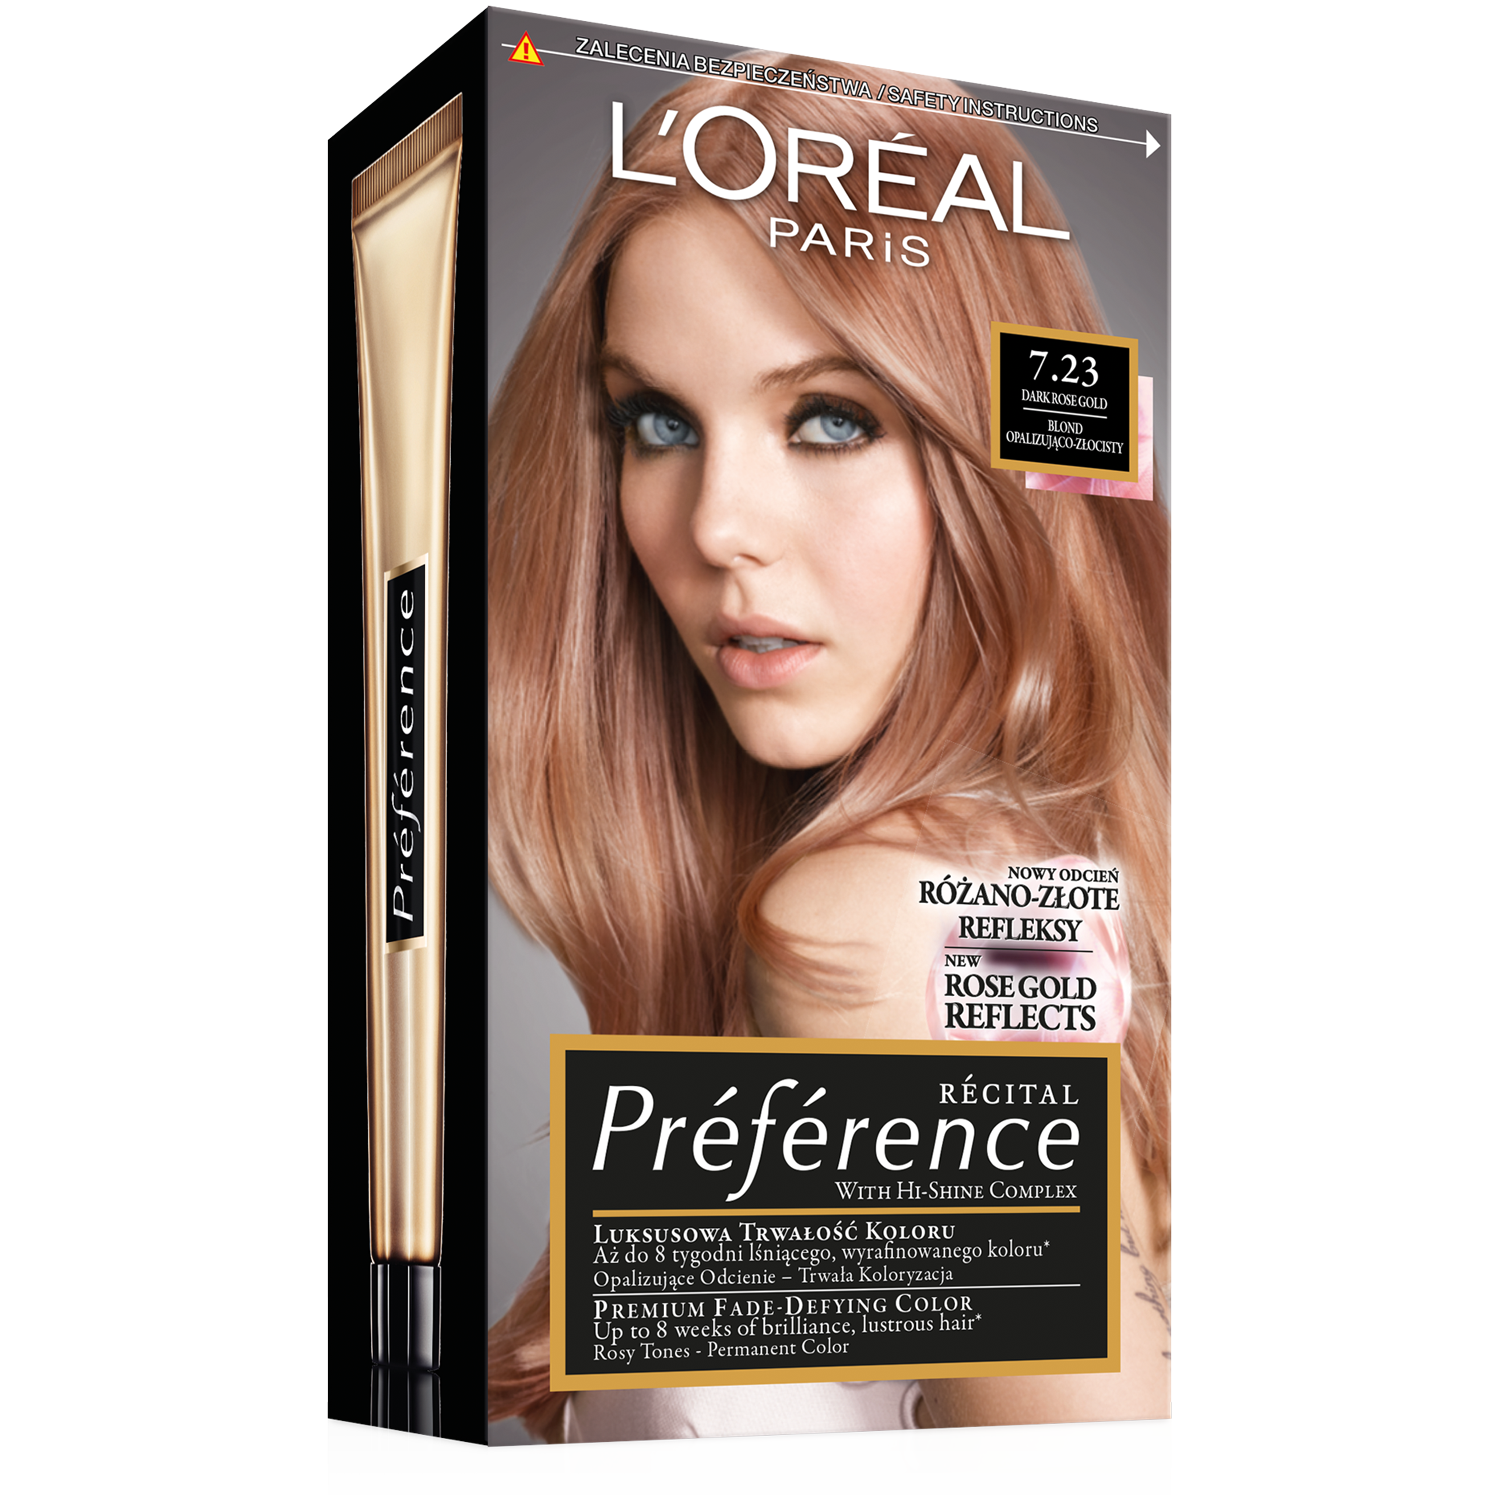 Rose gold hair color краска для волос